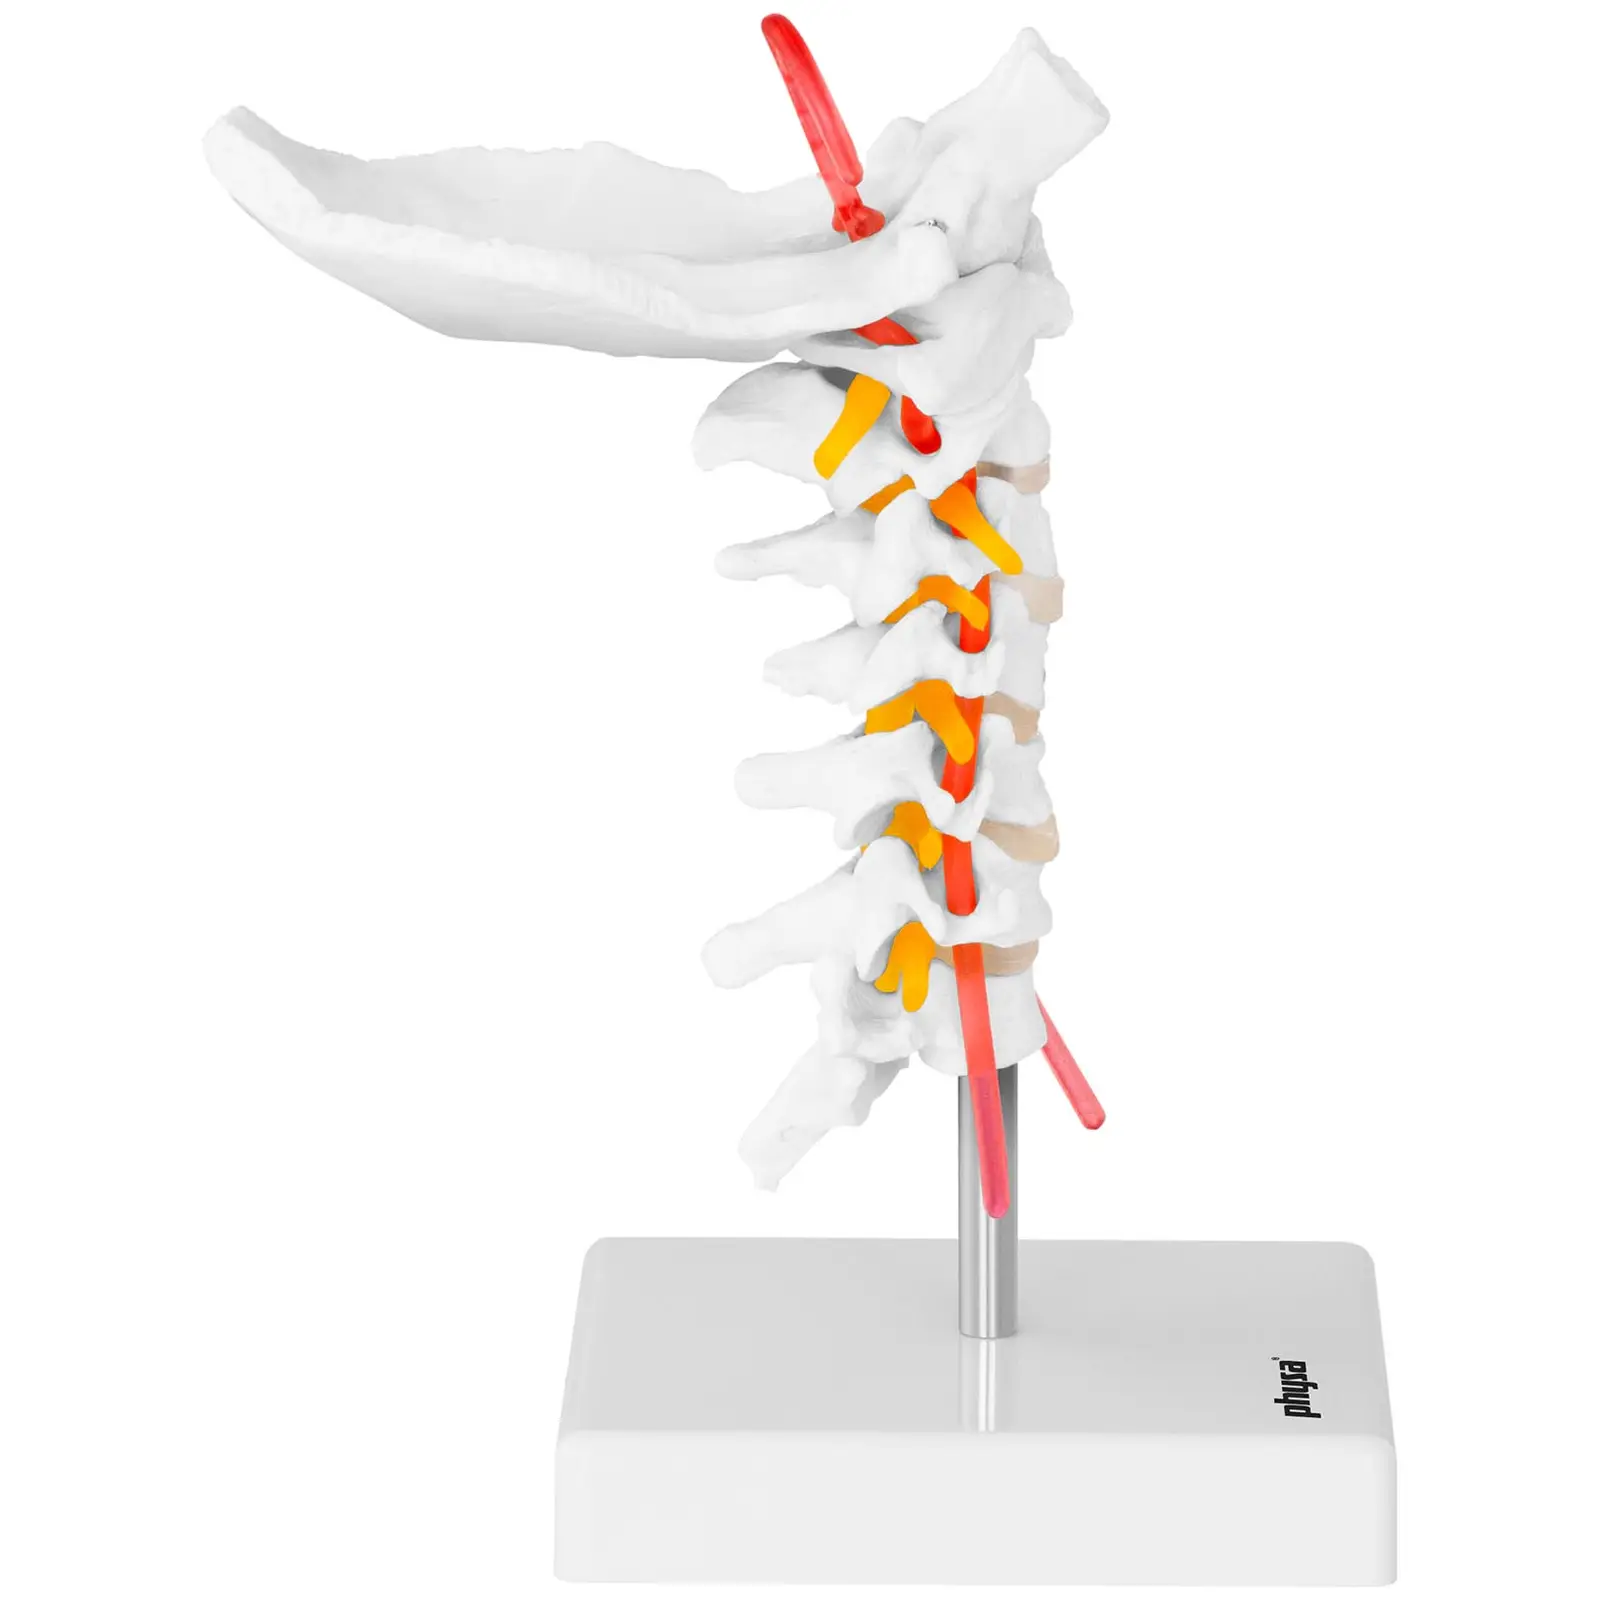 Model vratne hrbtenice - v naravni velikosti